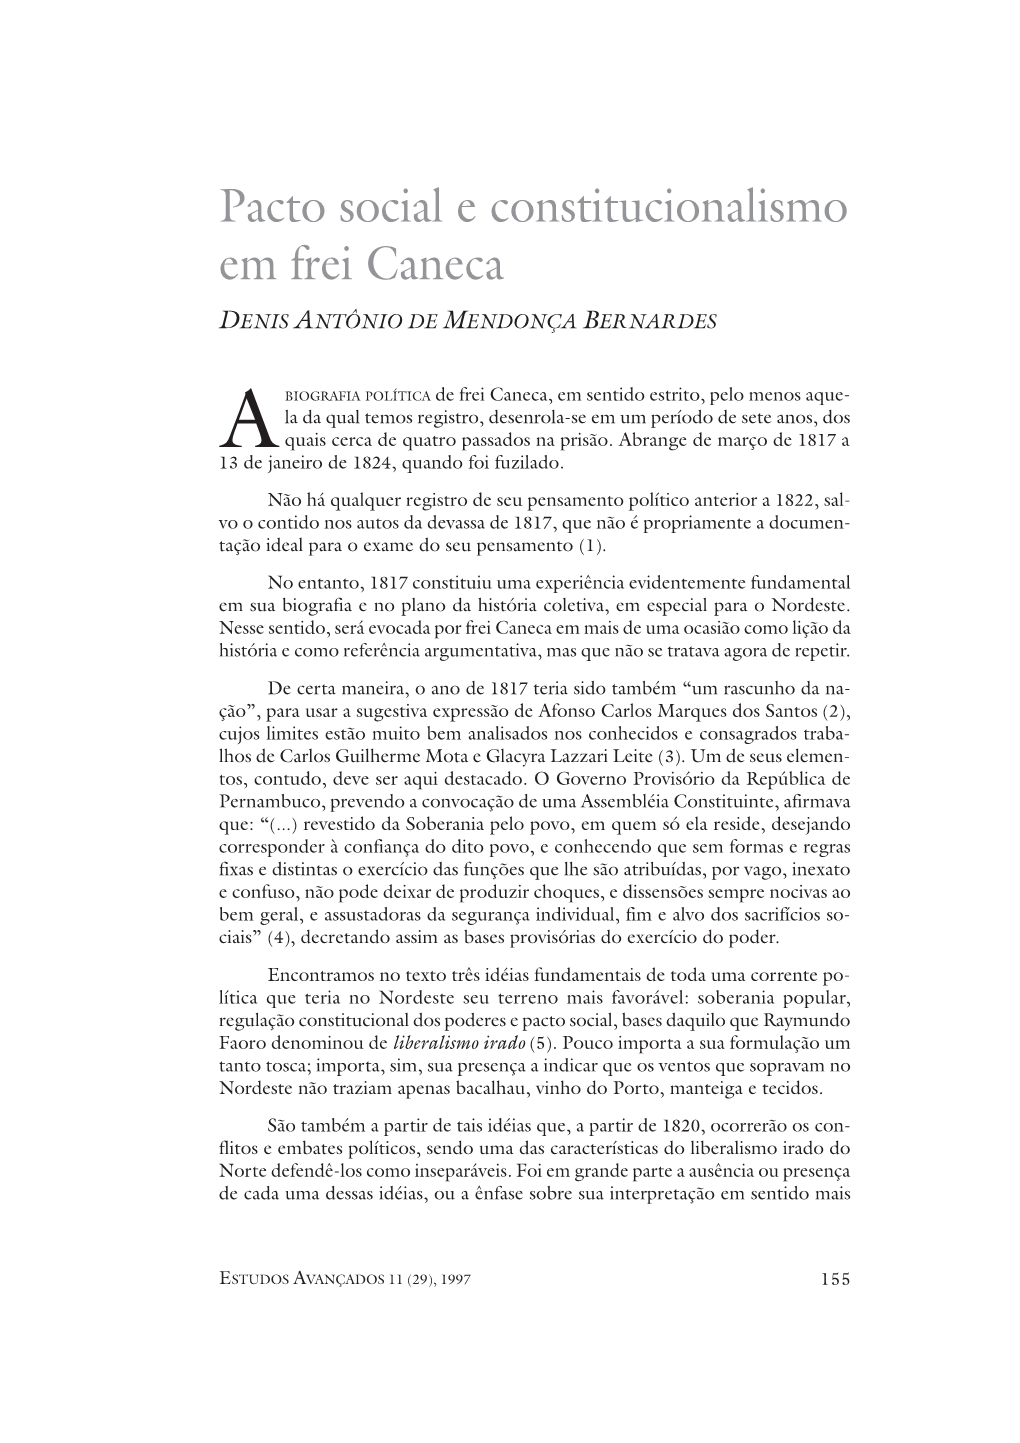 Pacto Social E Constitucionalismo Em Frei Caneca DENIS ANTÔNIO DE MENDONÇA BERNARDES